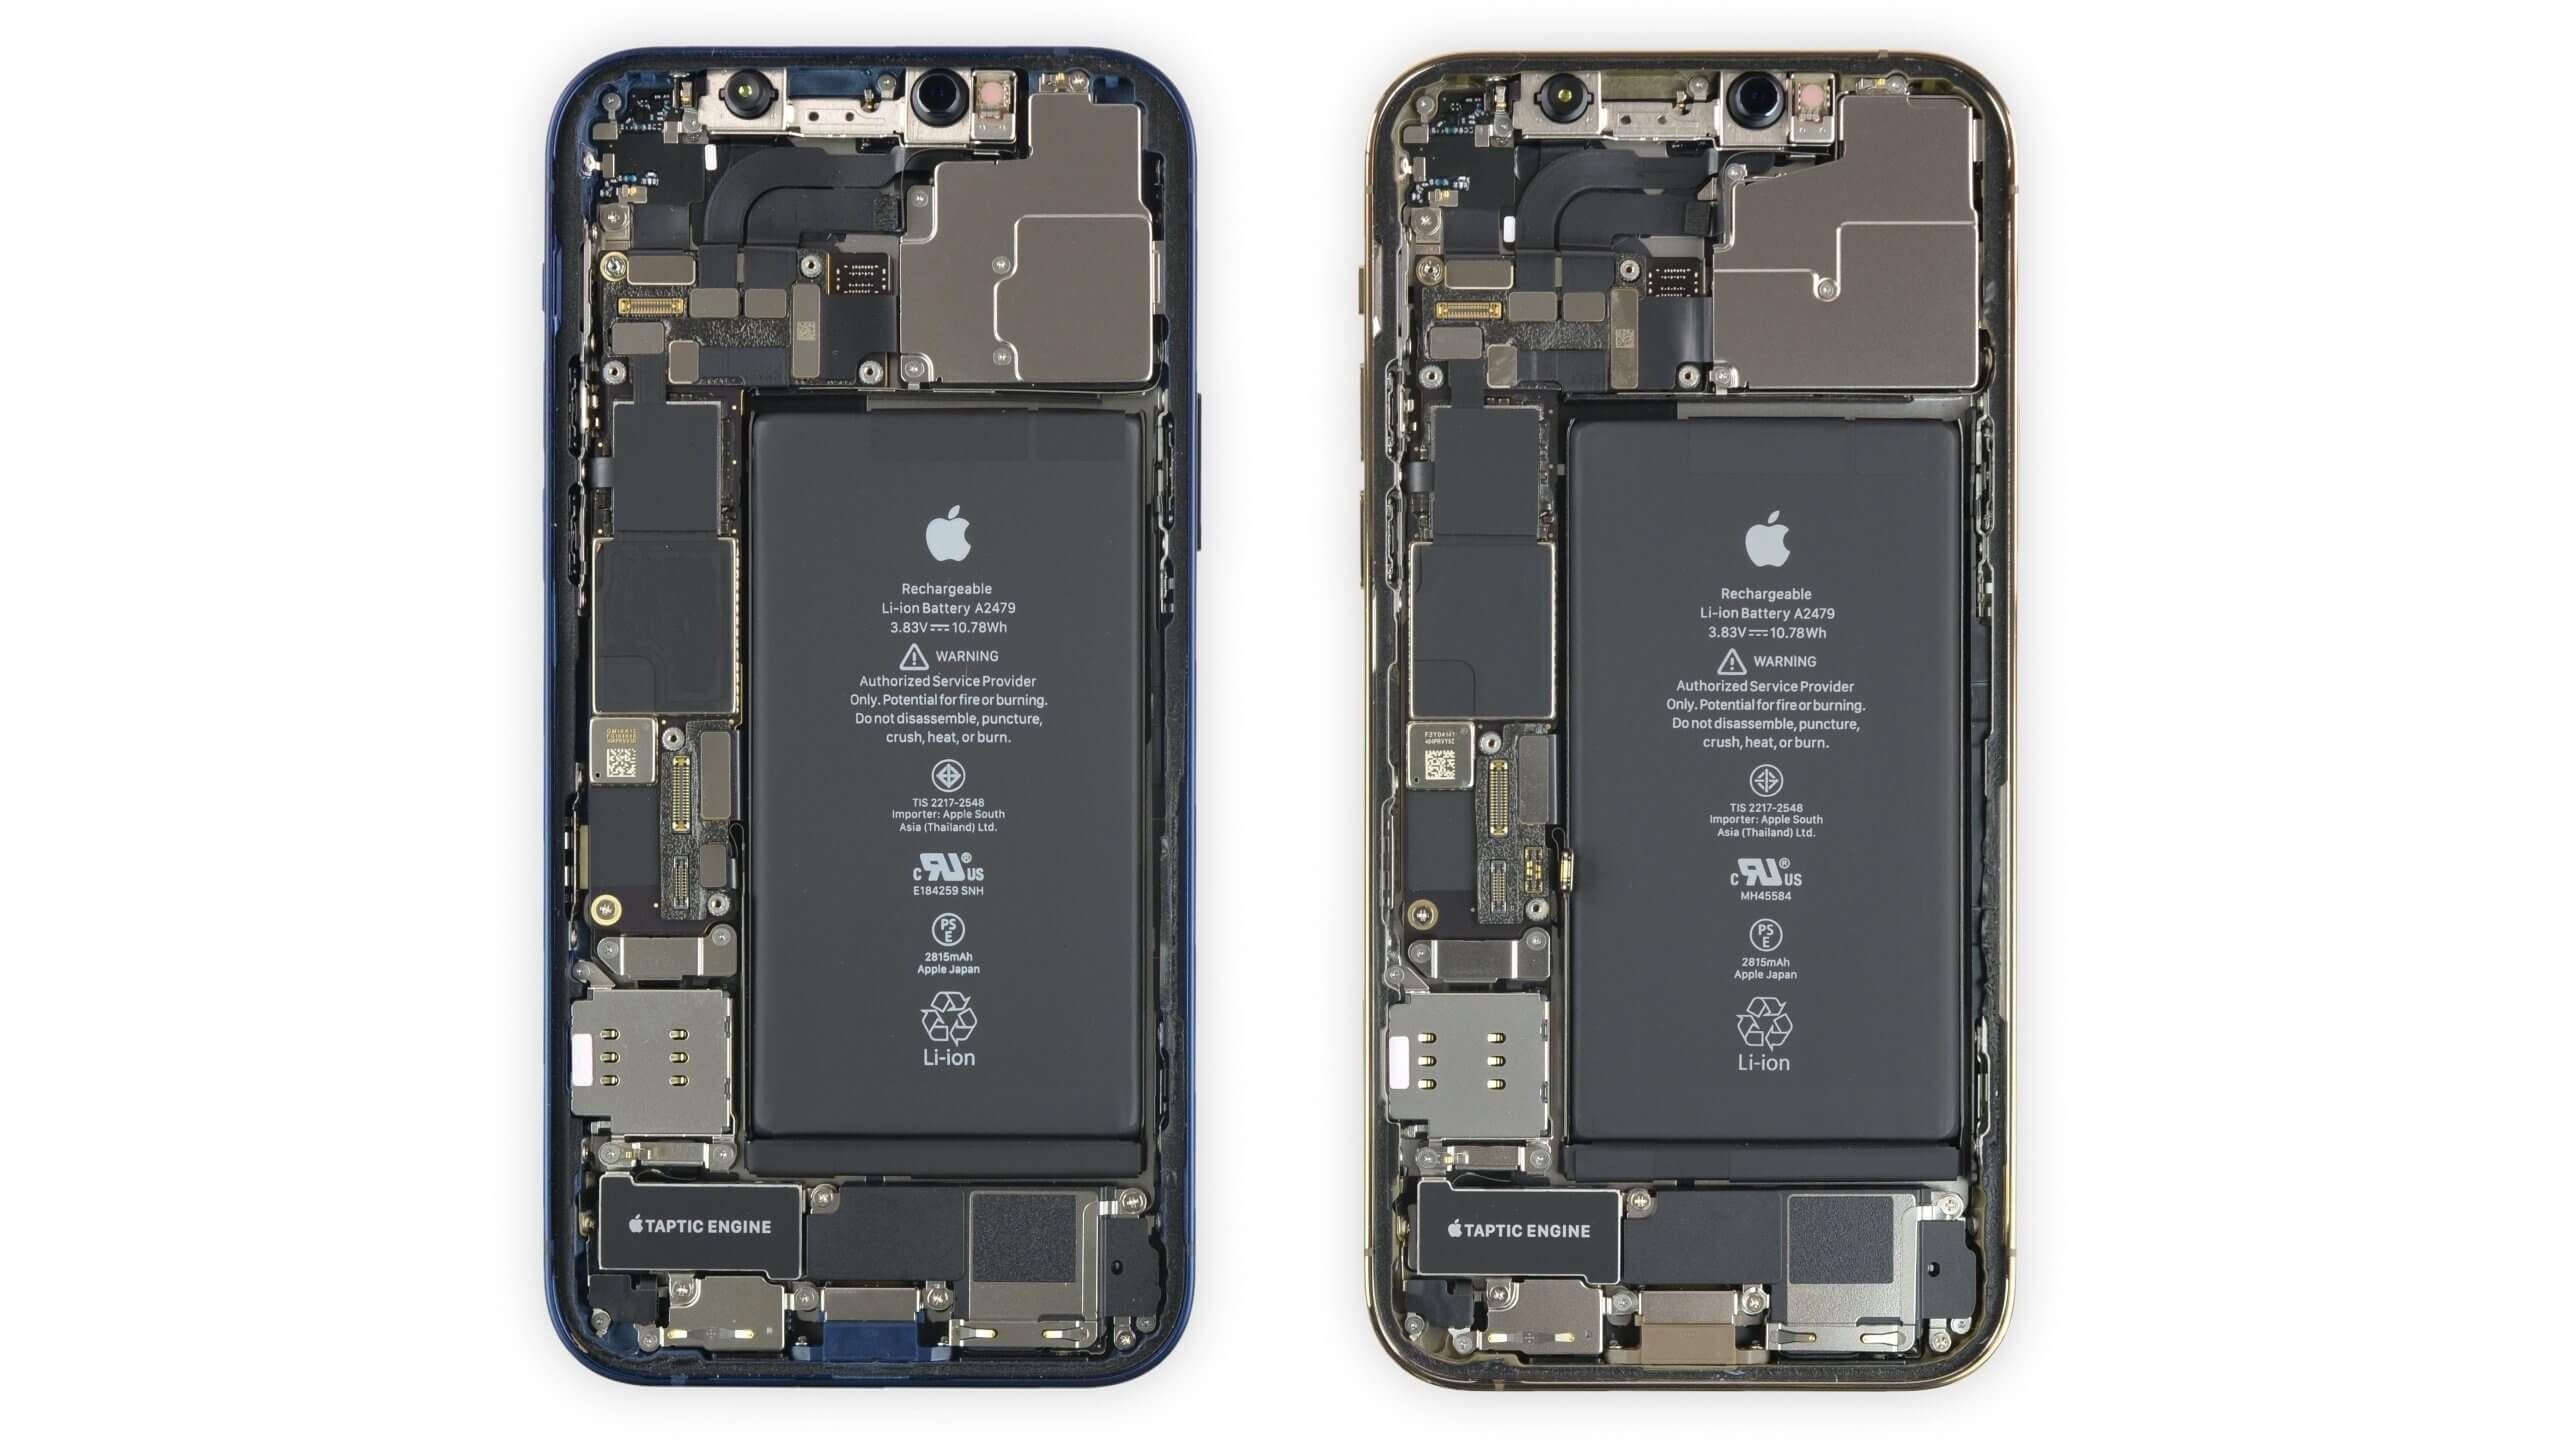 Загляните внутрь своего iPhone 12 с новыми рентгеновскими и внутренними обоями iFixit.